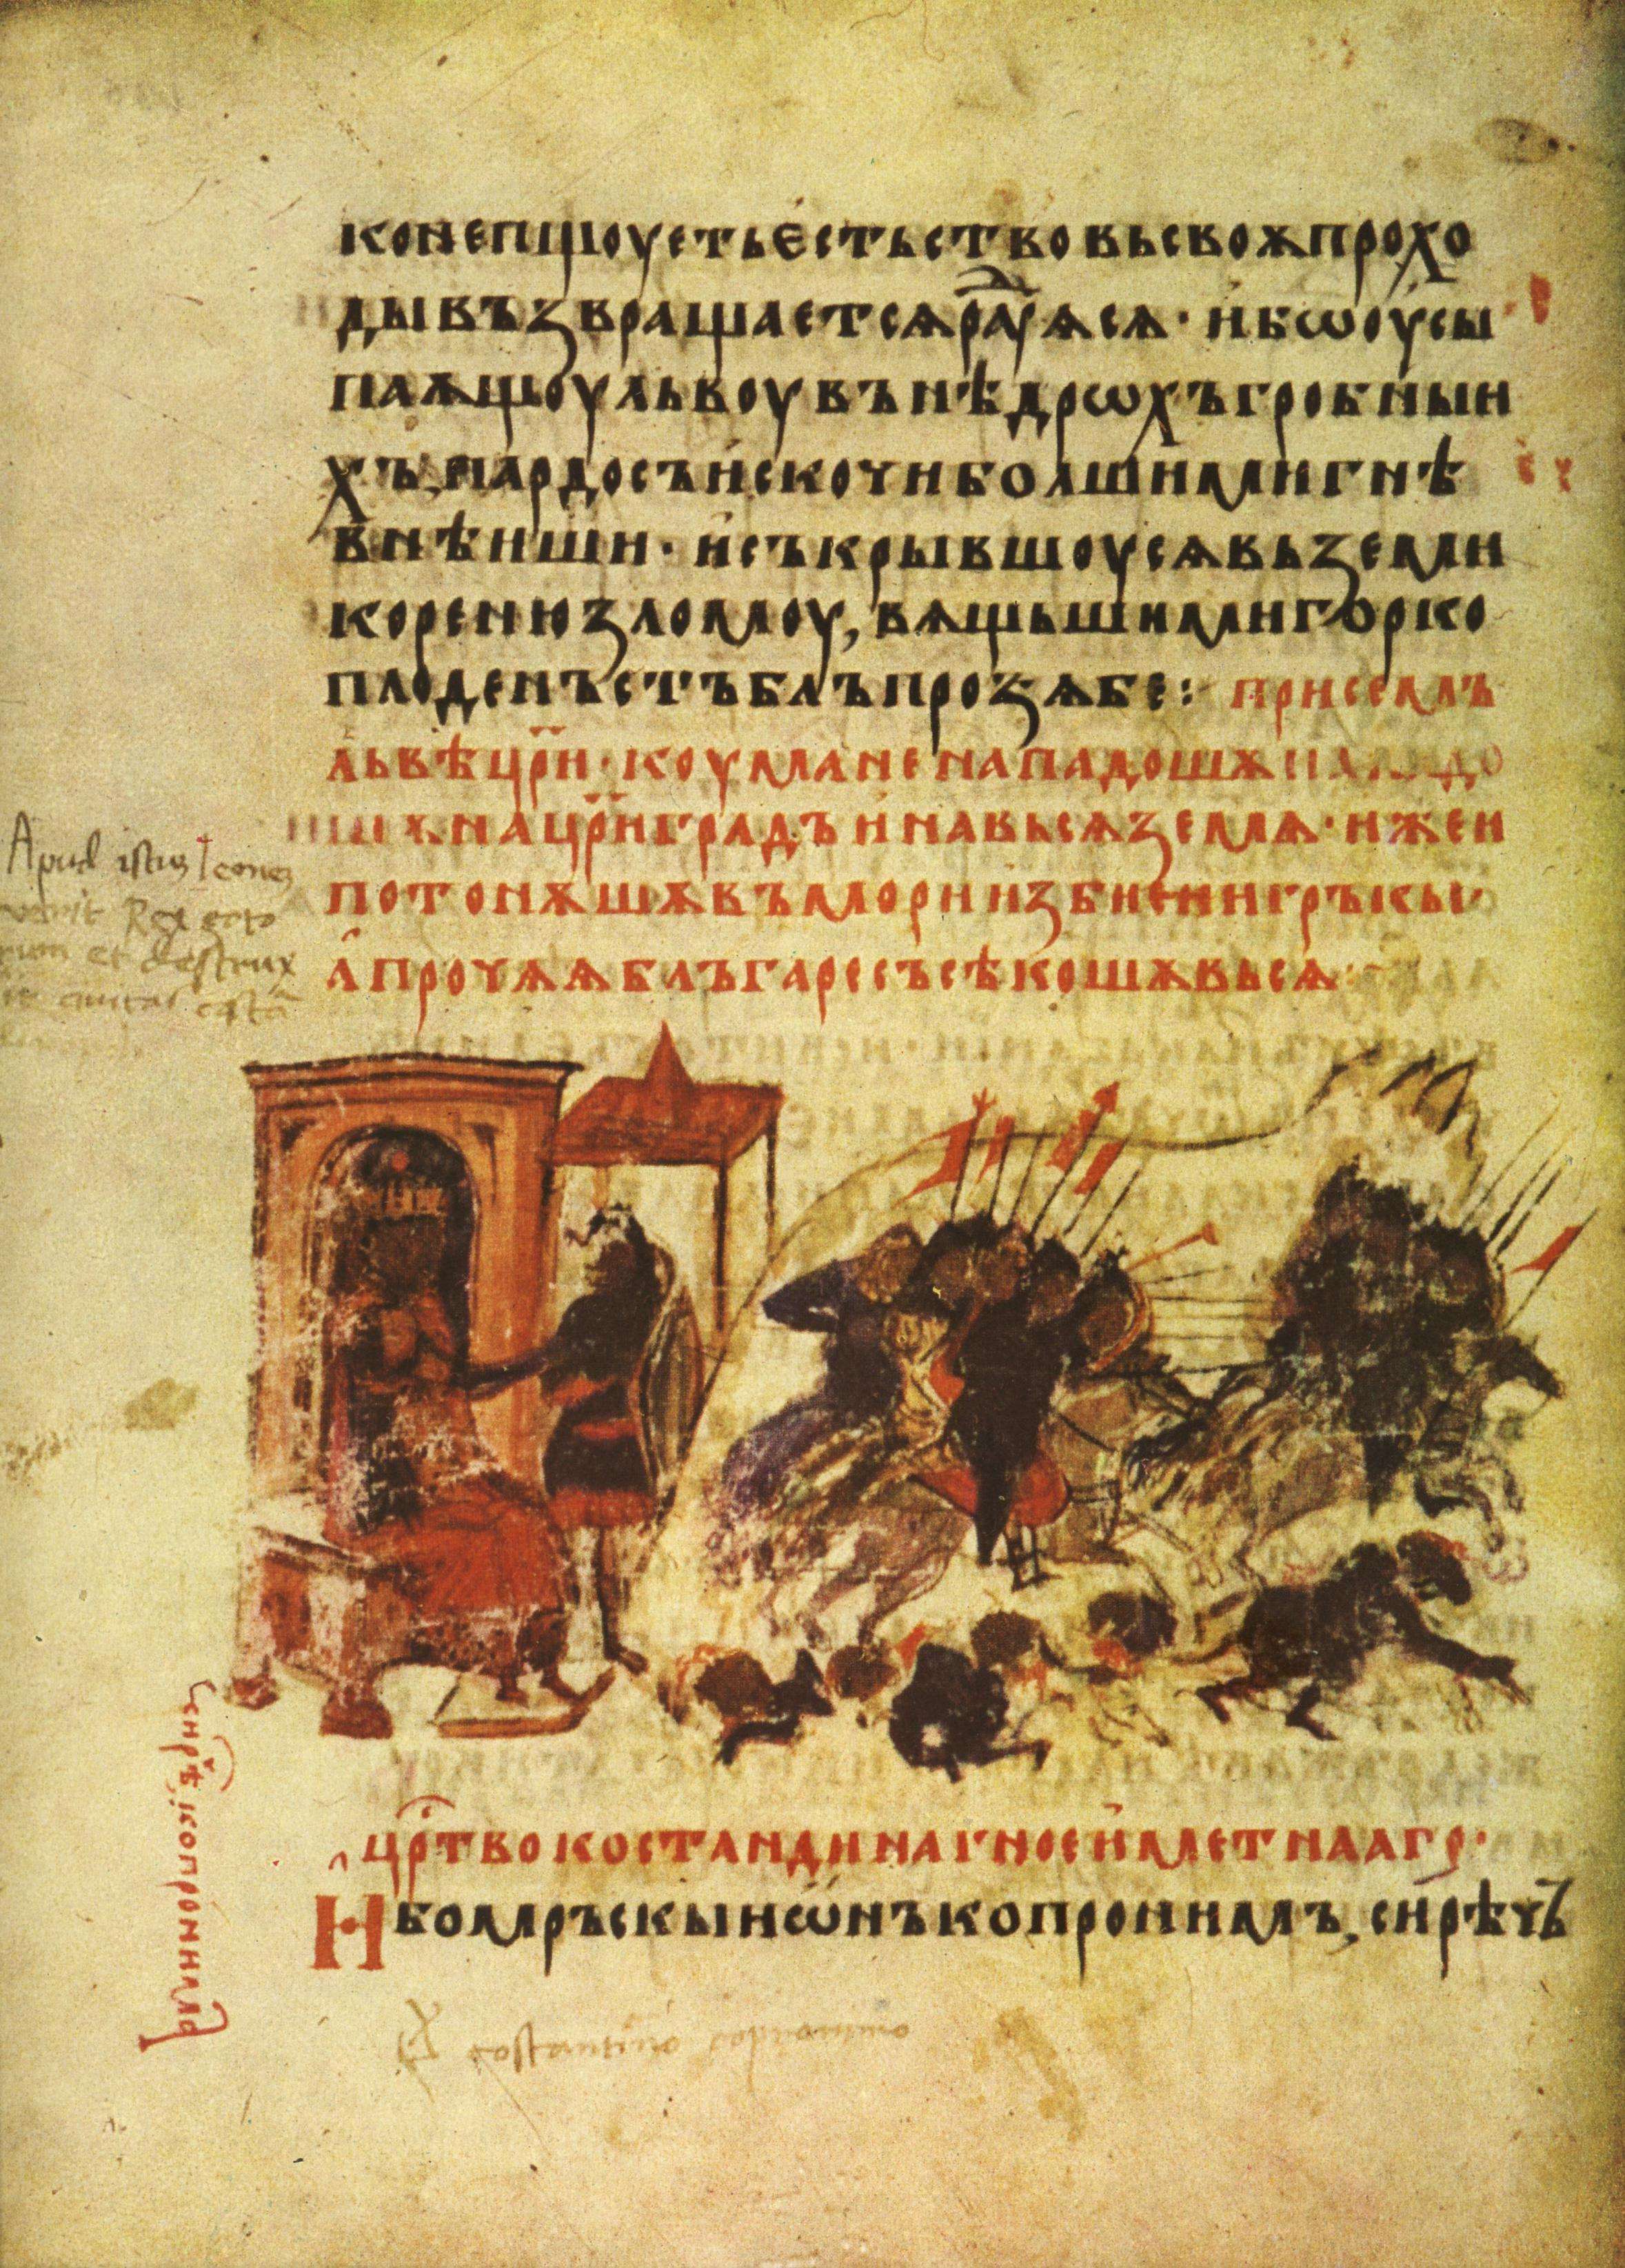 Η δεύτερη αραβική πολιορκία της Κωνσταντινούπολης, όπως απεικονίζεται στο βουλγαρικό αντίτυπο του Χρονικού του Κωνσταντίνου Μανασσή (14ος αιώνας).